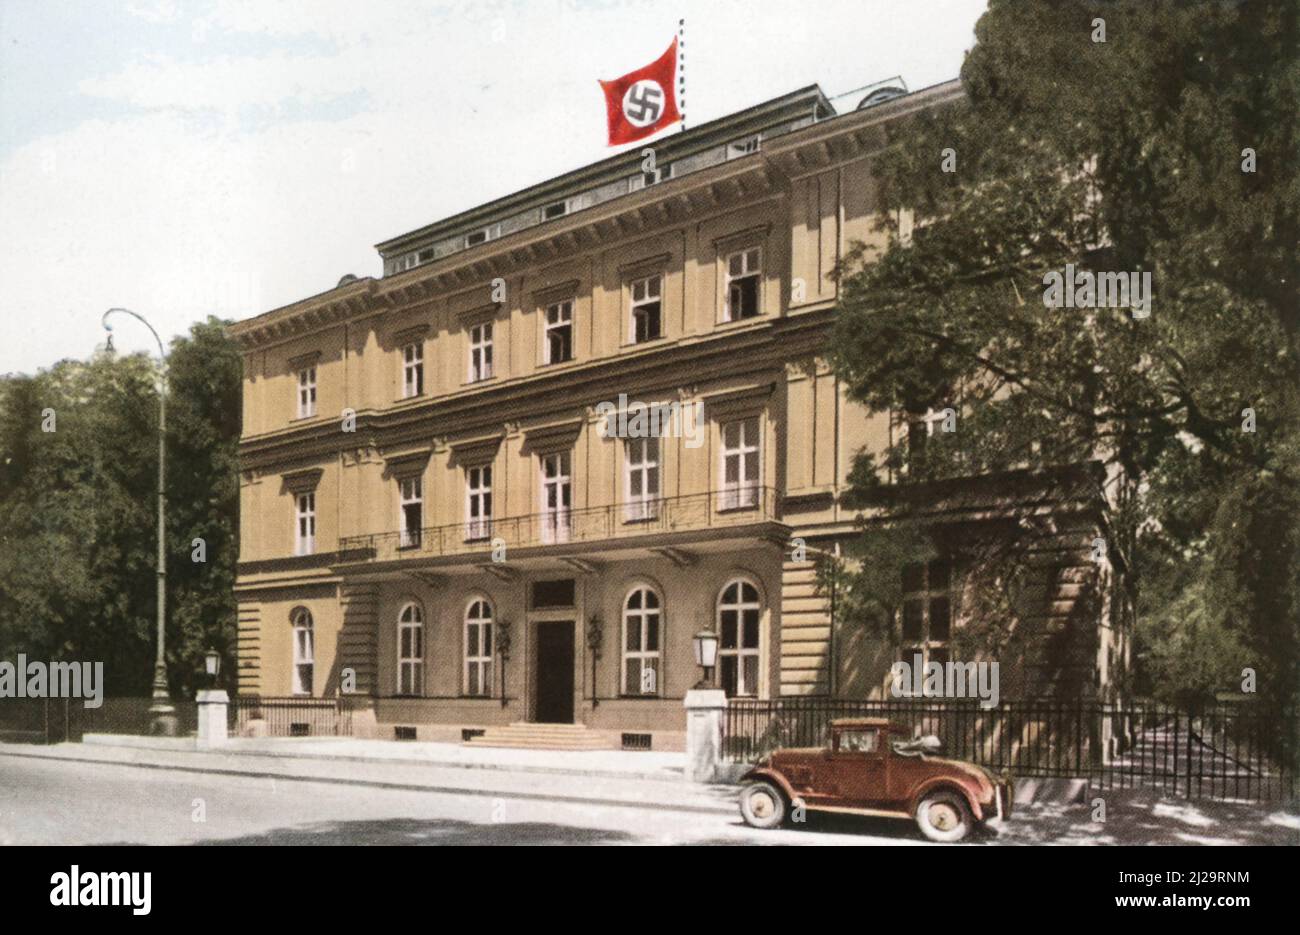 Adolf Hitler (* 20 avril 1889 à Braunau am Inn) (â€ 30 avril 1945 Berlin), chef du Parti nazi, chancelier de Reich de 1933, également Banque D'Images